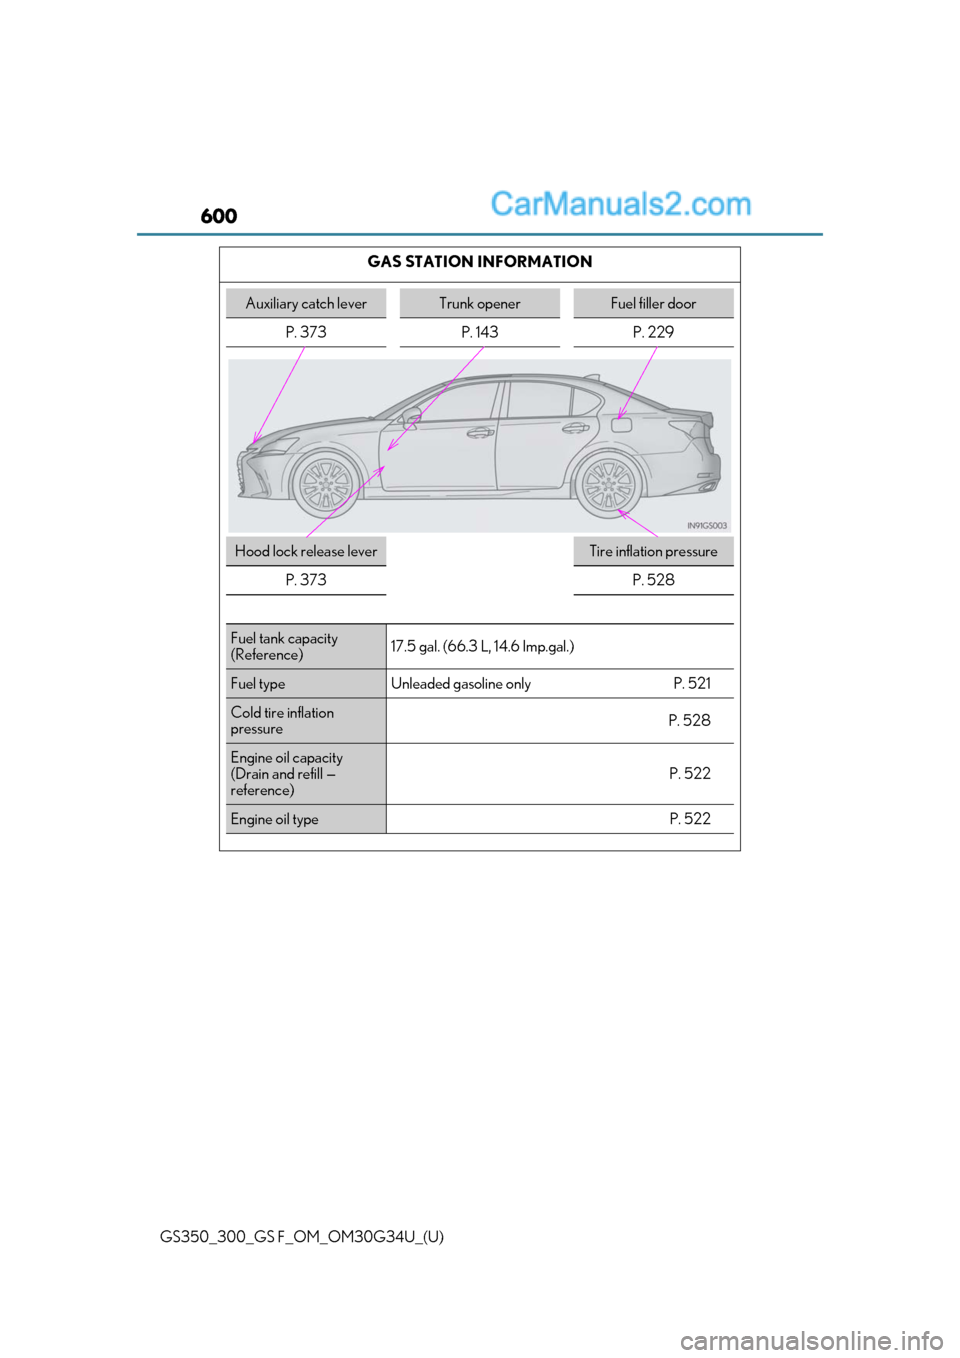 Lexus GS300 2018  s User Guide 600
GS350_300_GS F_OM_OM30G34U_(U)GAS STATION INFORMATION
Auxiliary catch leverTrunk openerFuel filler door
P. 373 P. 143 P. 229
Hood lock release leverTire inflation pressure
P. 373
P. 528
Fuel tank 